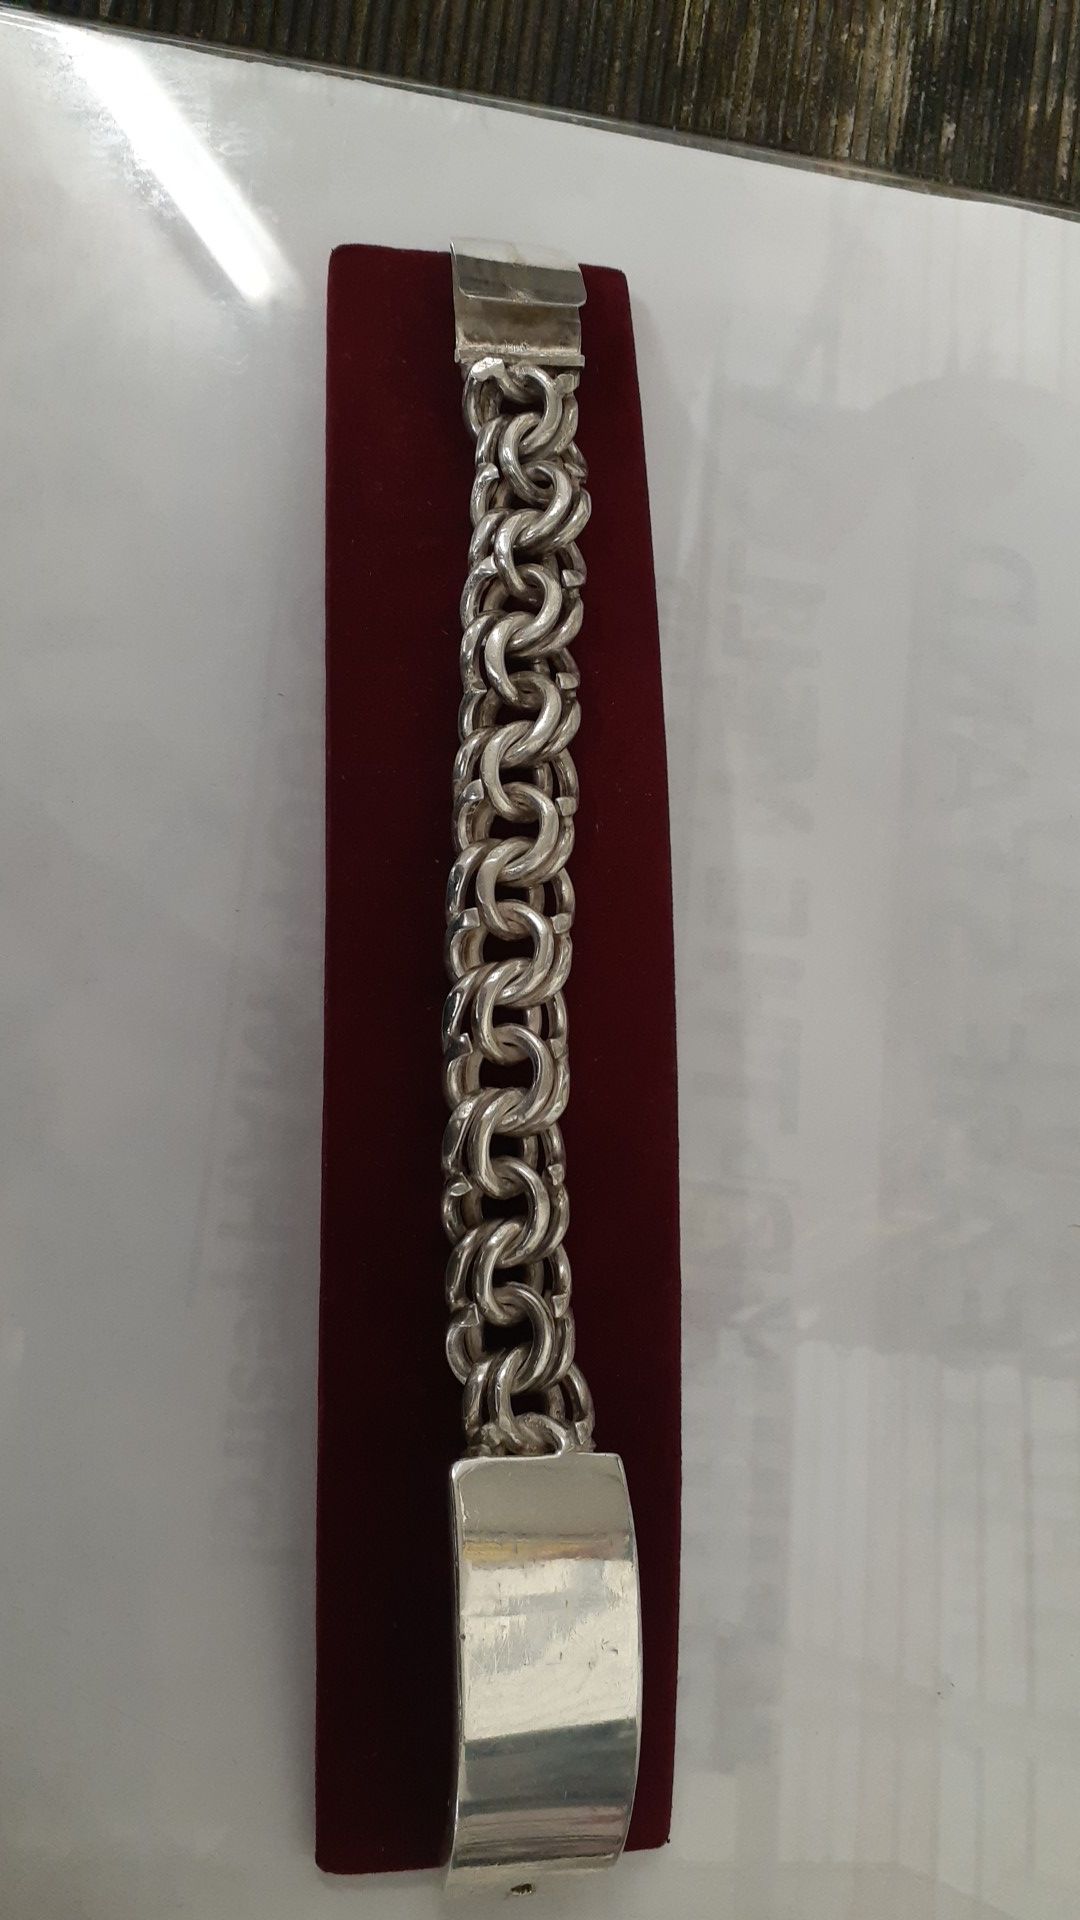 Men's silver bracelet